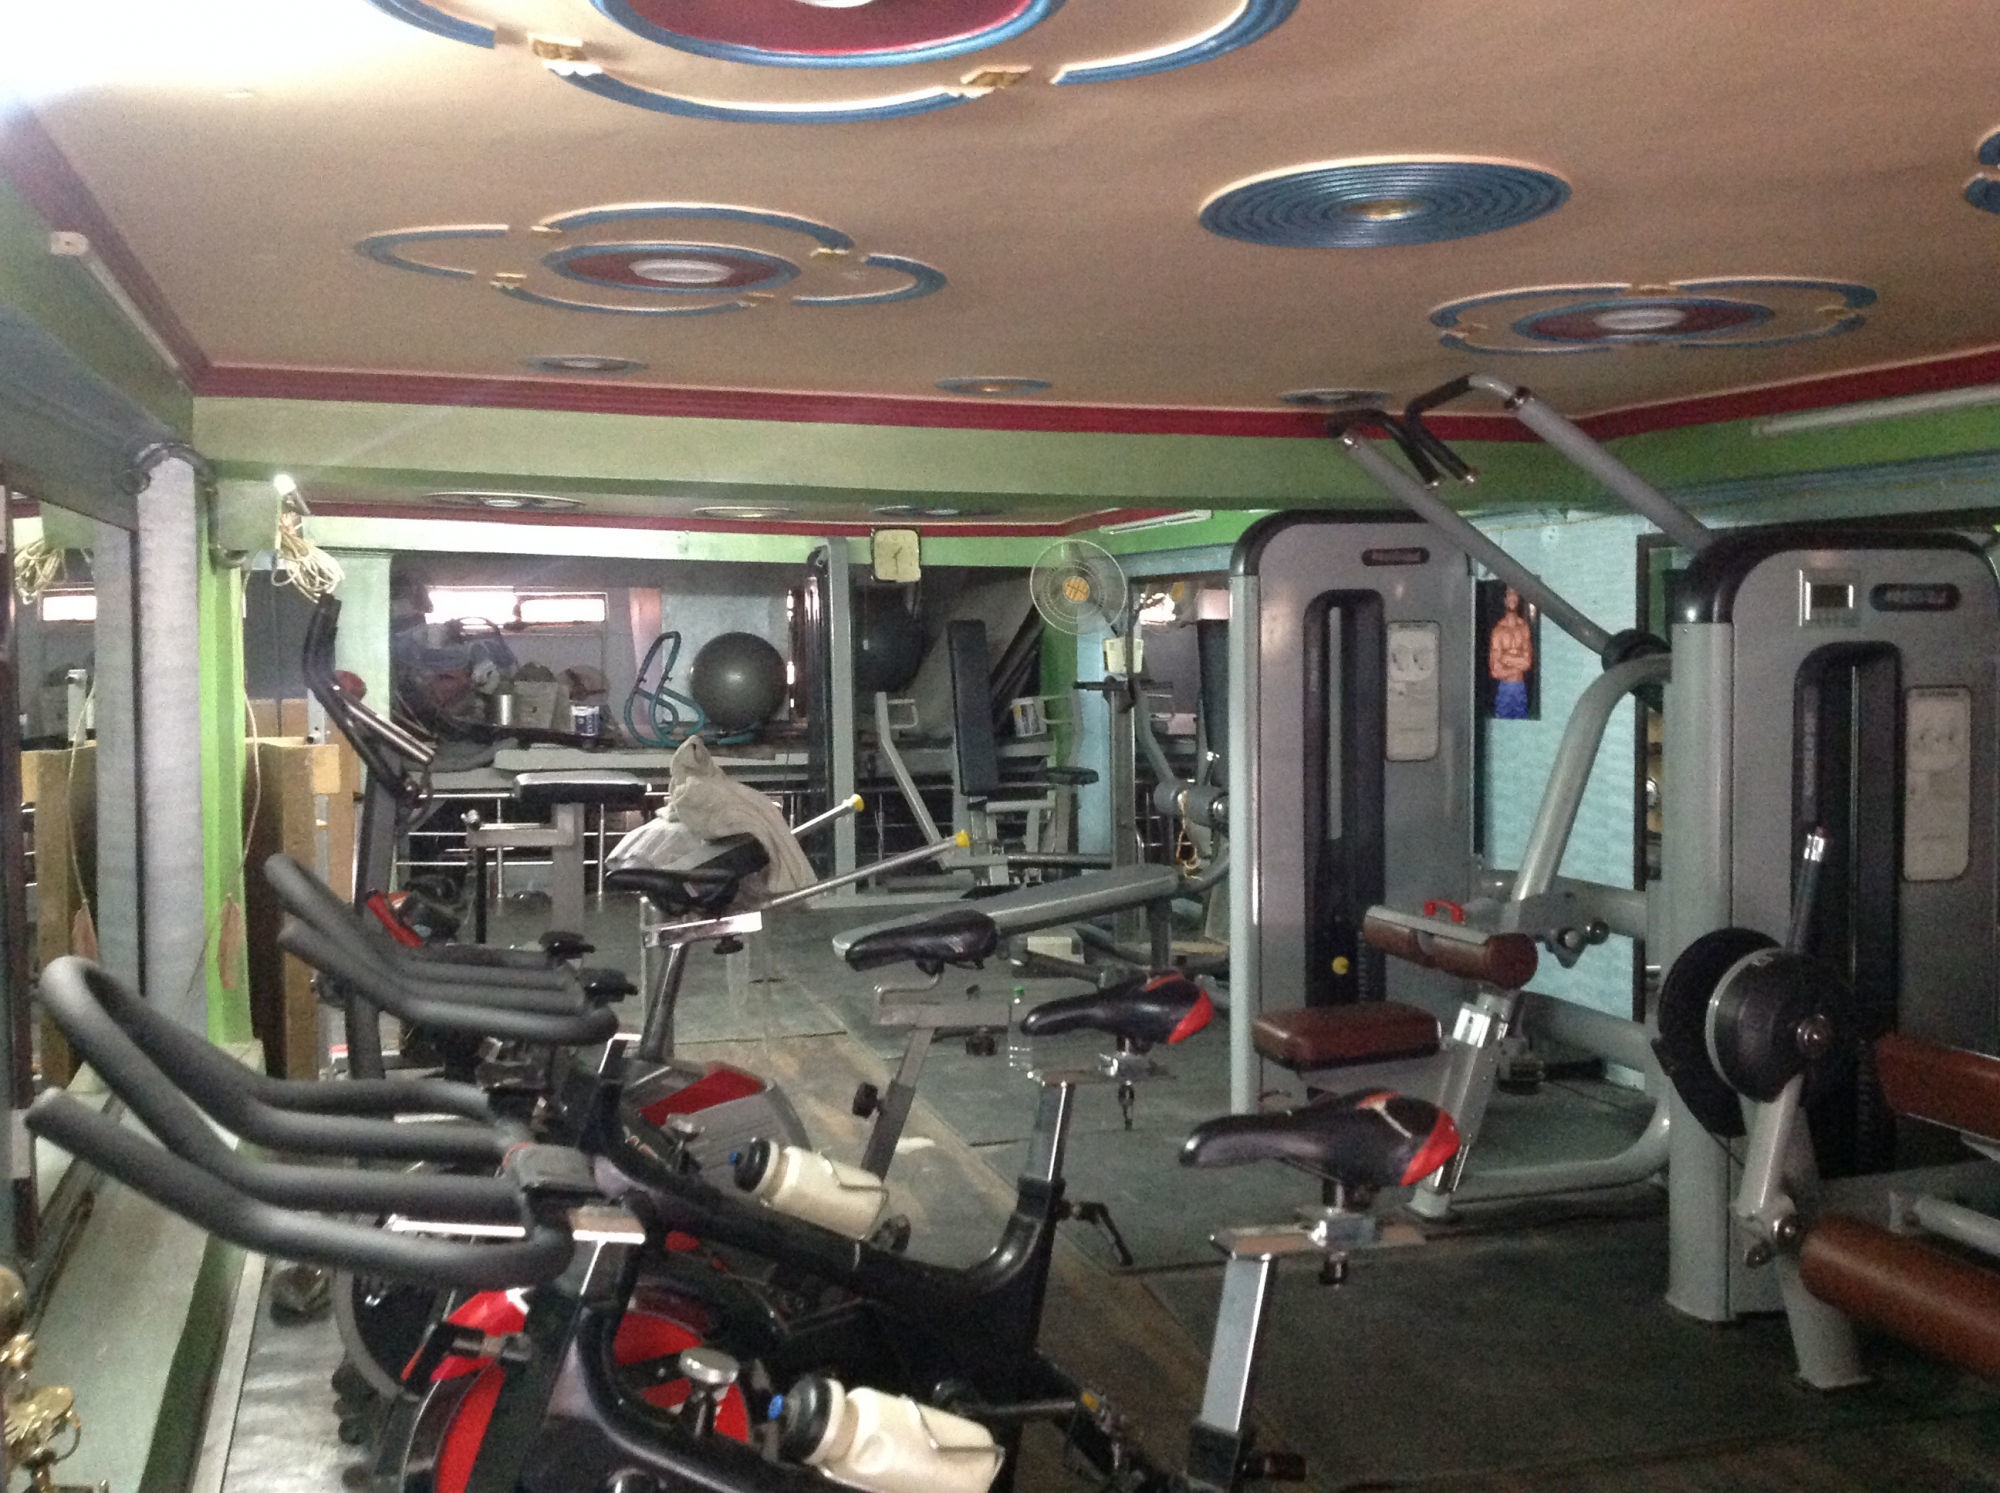 New-Delhi-Laxmi-Nagar-Fitness-Point-gym_544_NTQ0_MTg3Nw